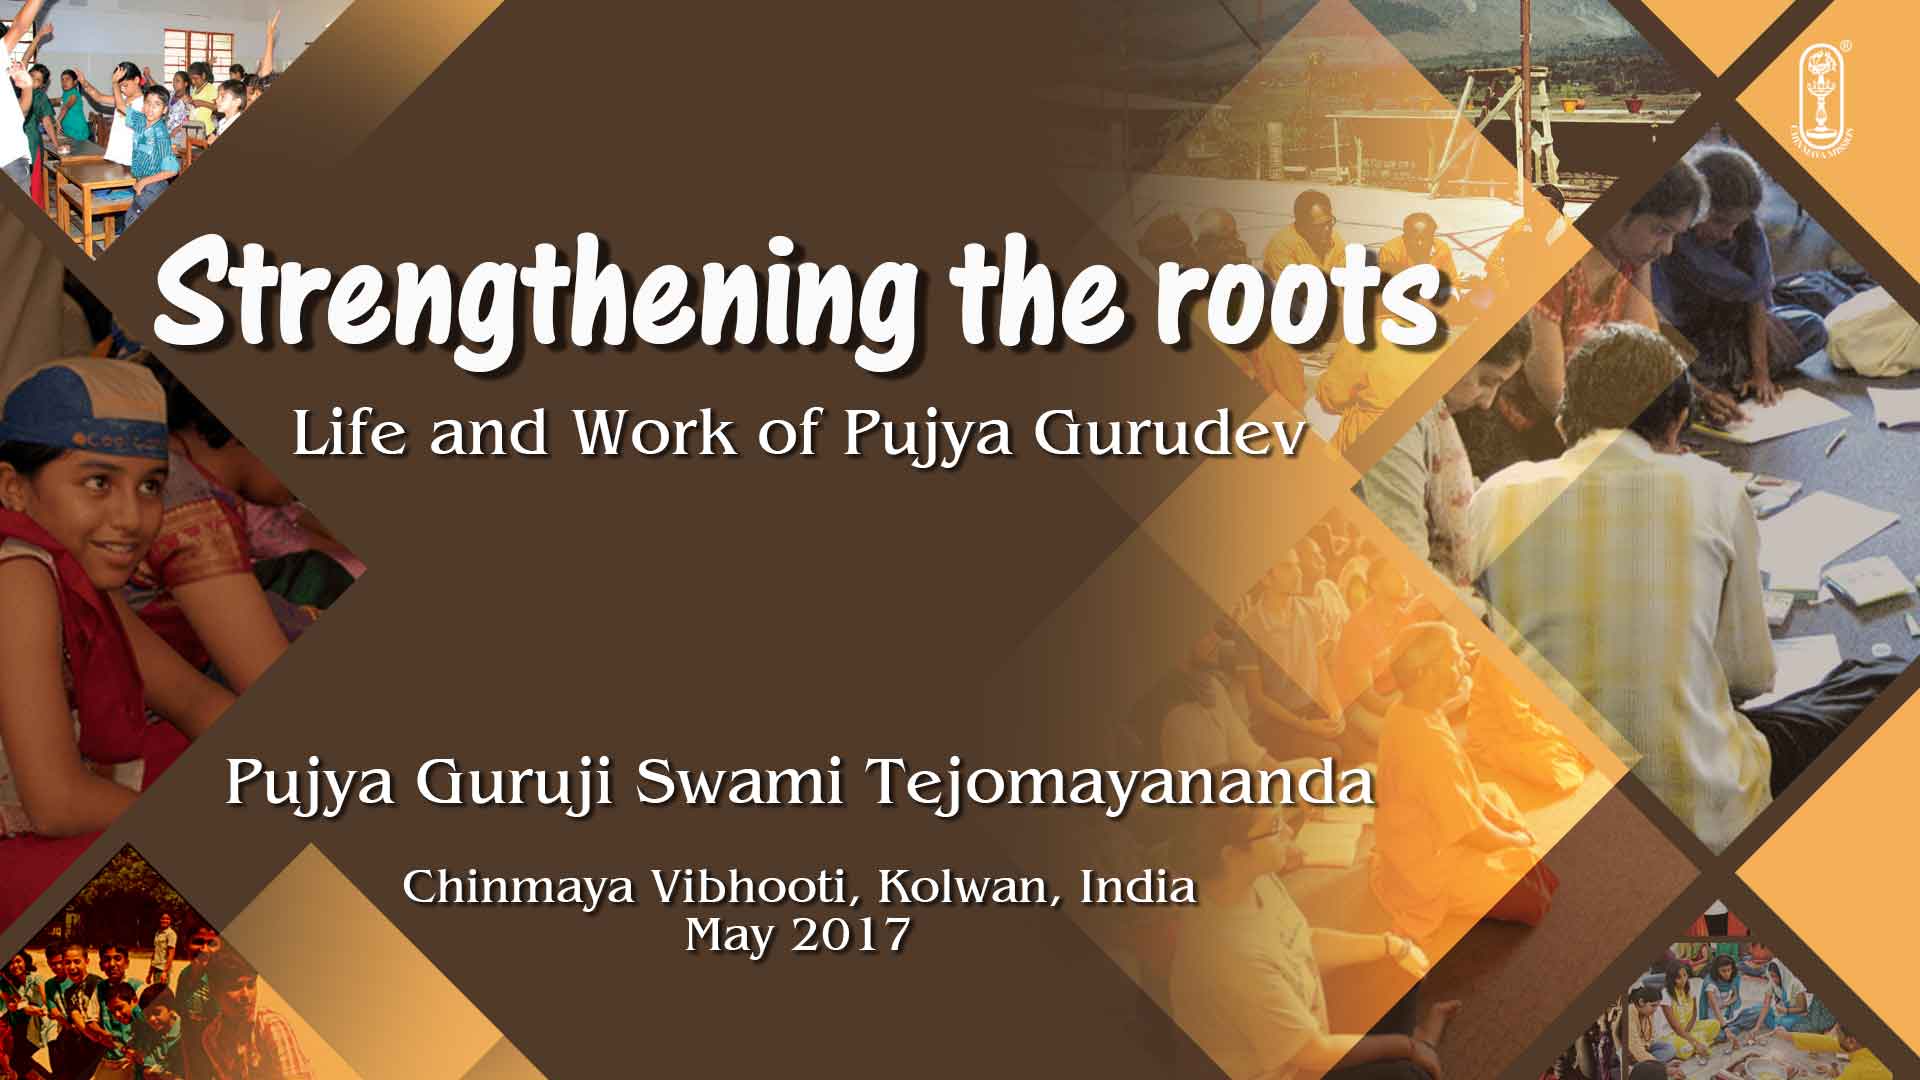 Life and Work of Pujya Gurudev